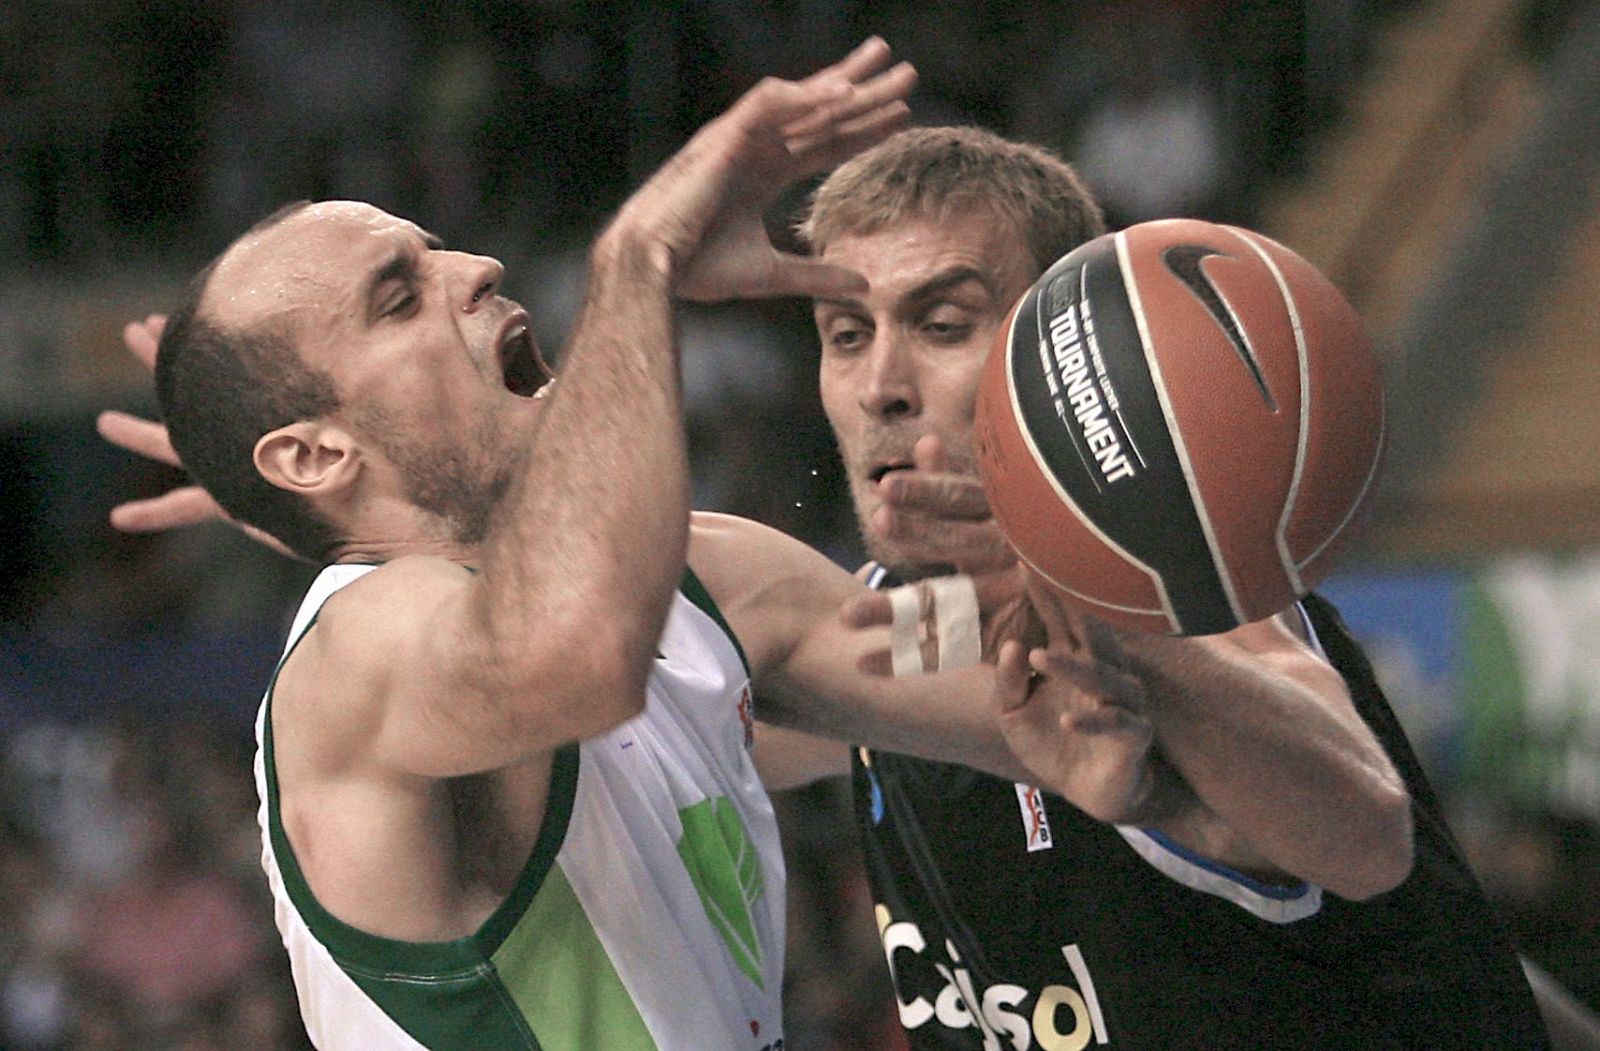 El alero del Unicaja Carlos Jiménez  se disputa el balón con el también pívot del Cajasol, Iñaki de Miguel en el partido de la segunda jornada de la Liga ACB.